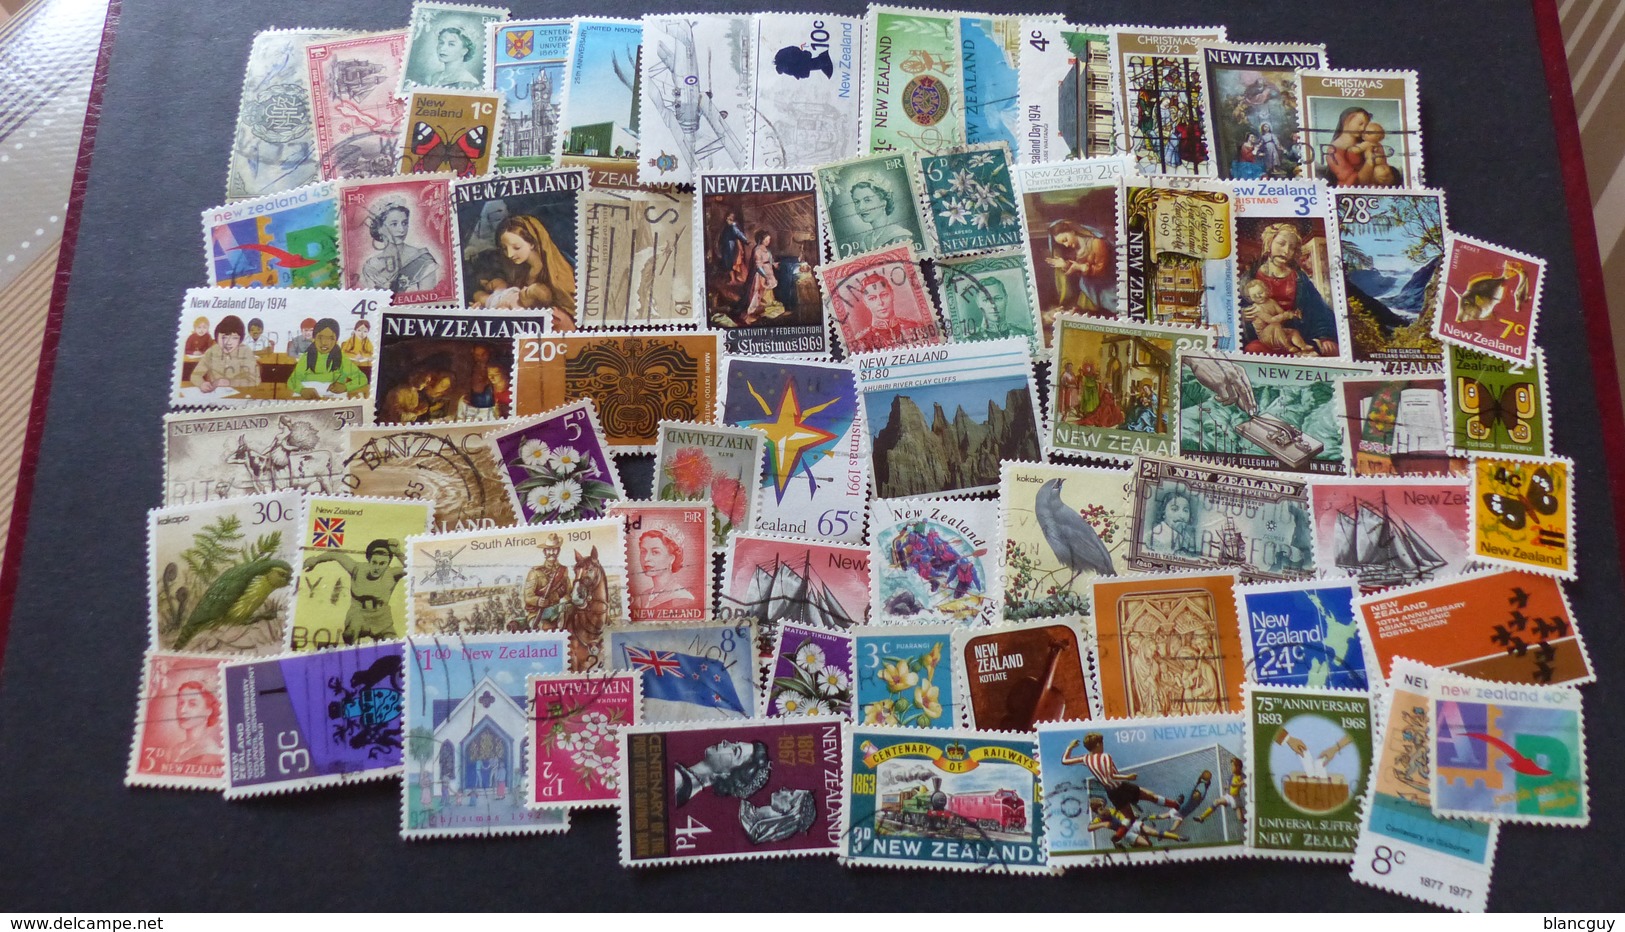 AFRIQUE - AMÉRIQUE - ASIE - OCÉANIE - 2400 timbres tous différents neufs et oblitérés